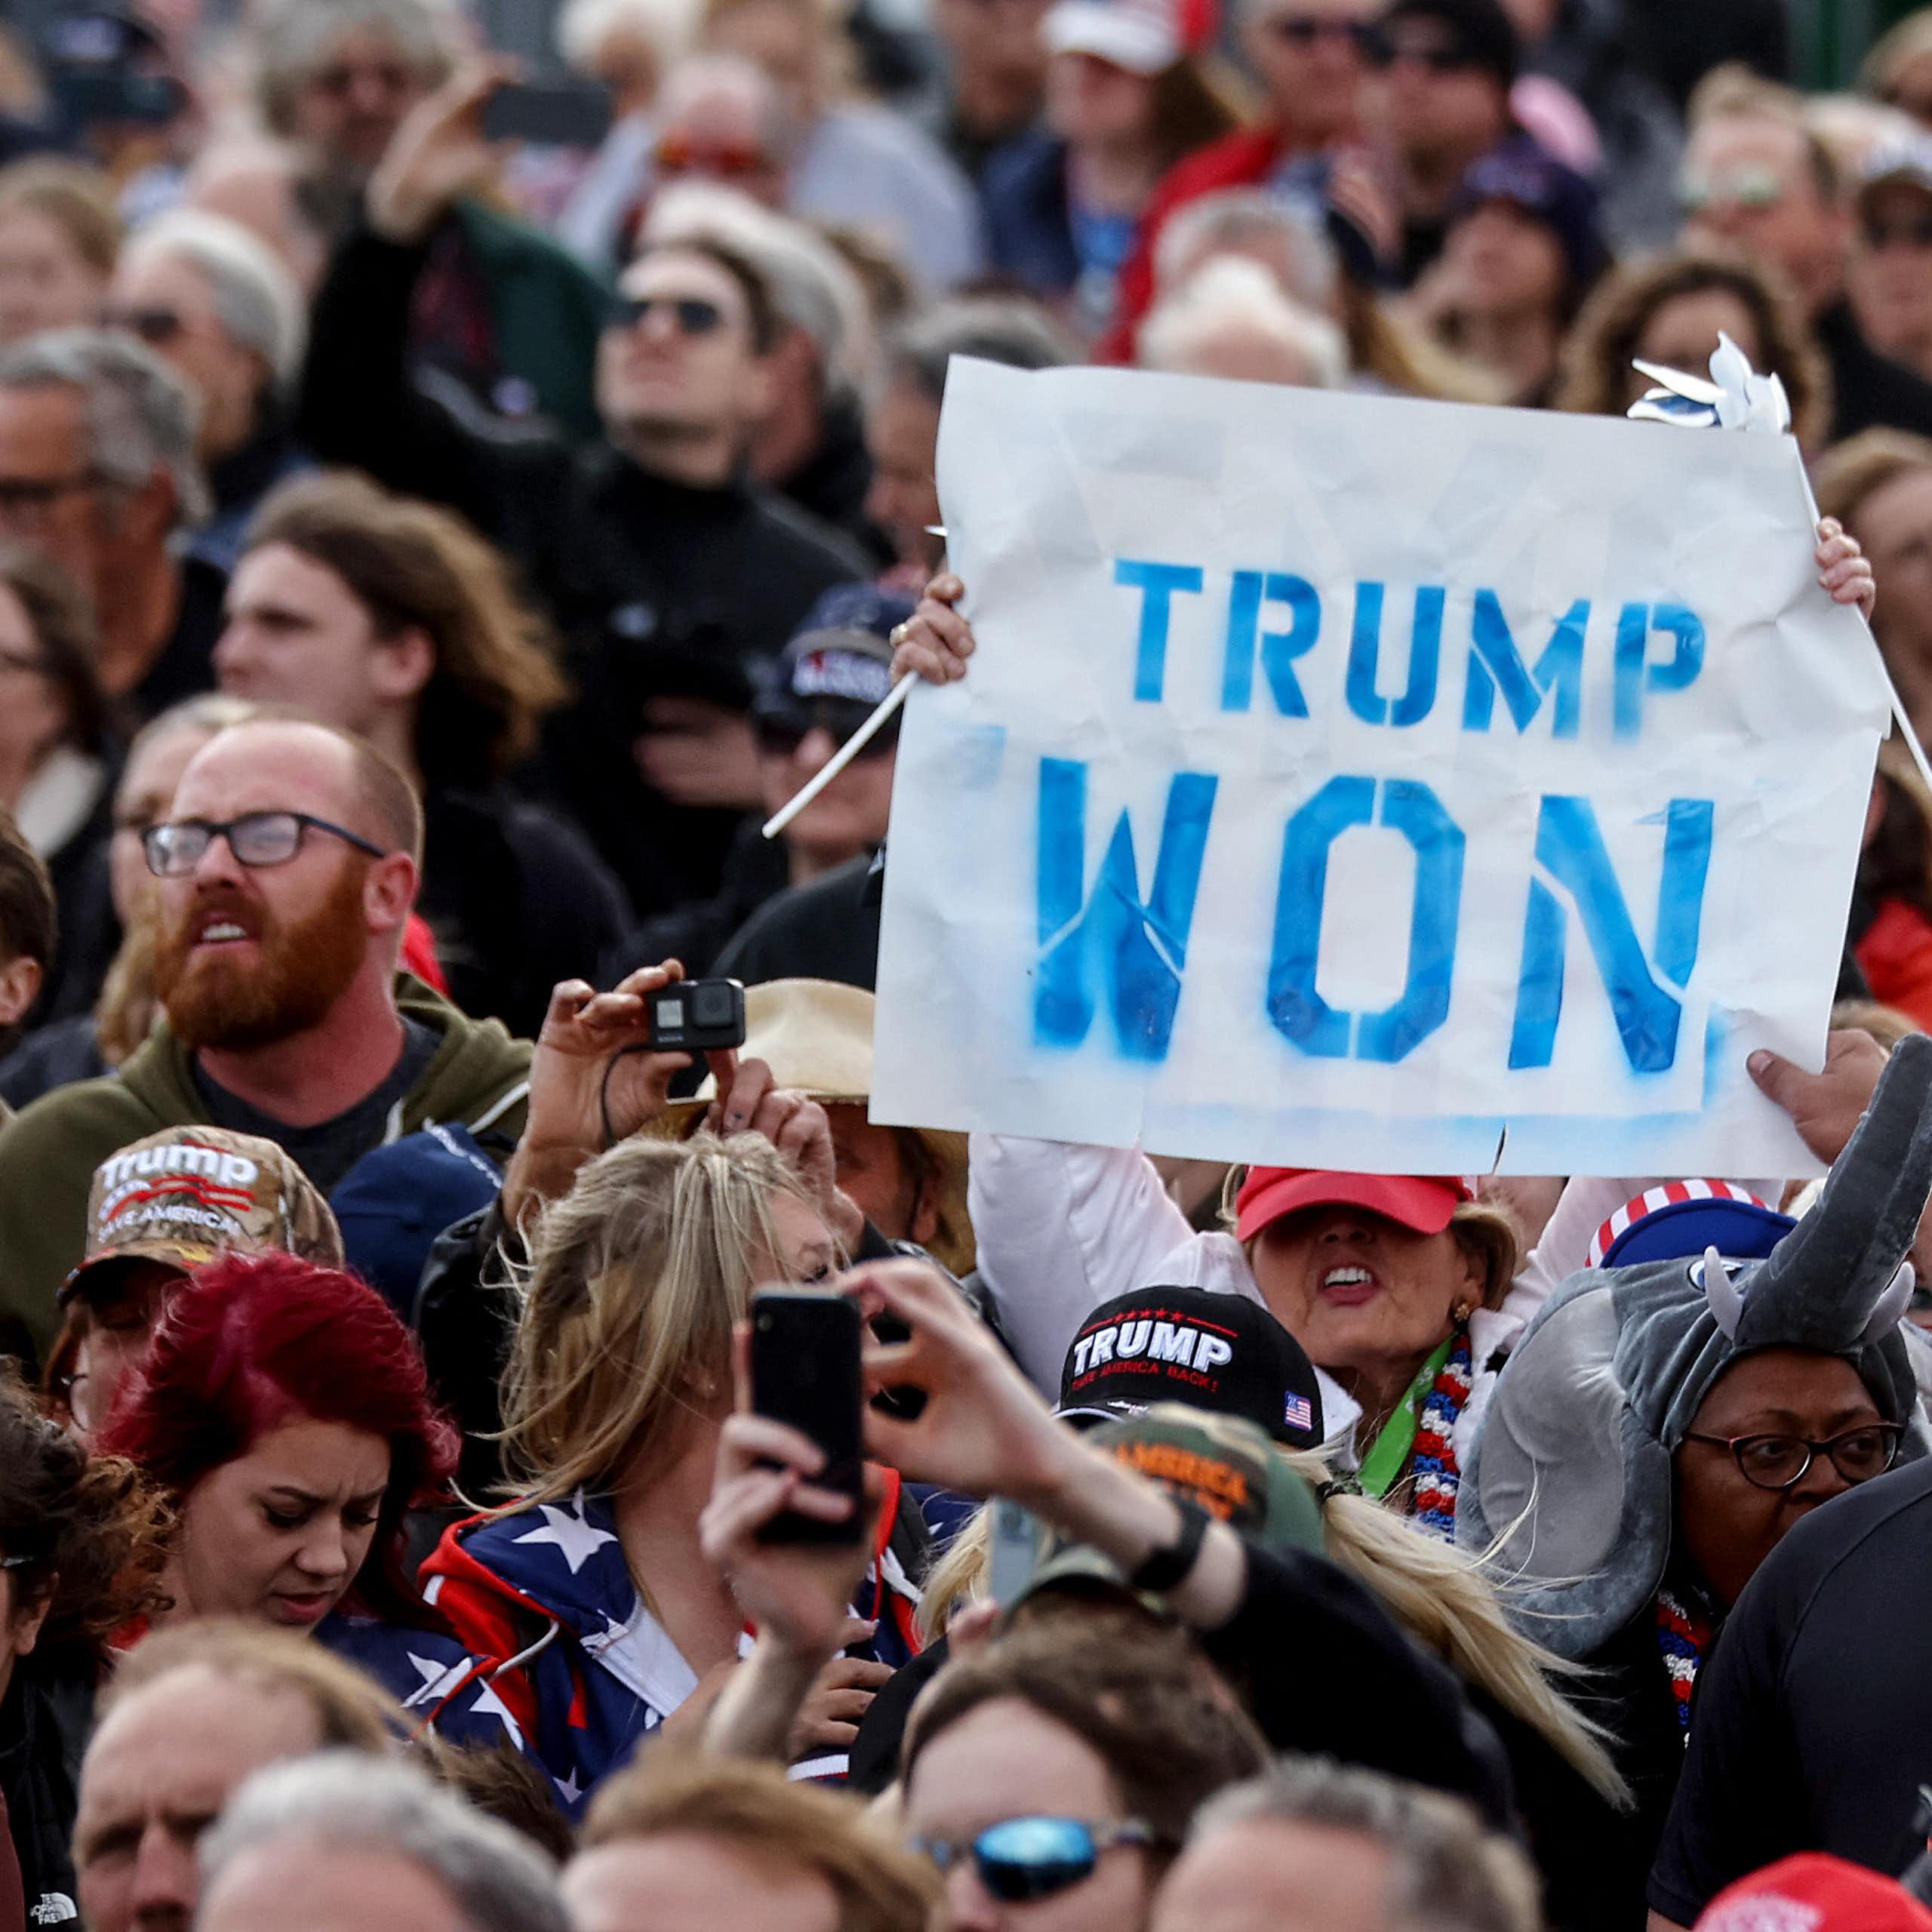 Une personne brandit une pancarte « Trump won » au milieu d'une foule